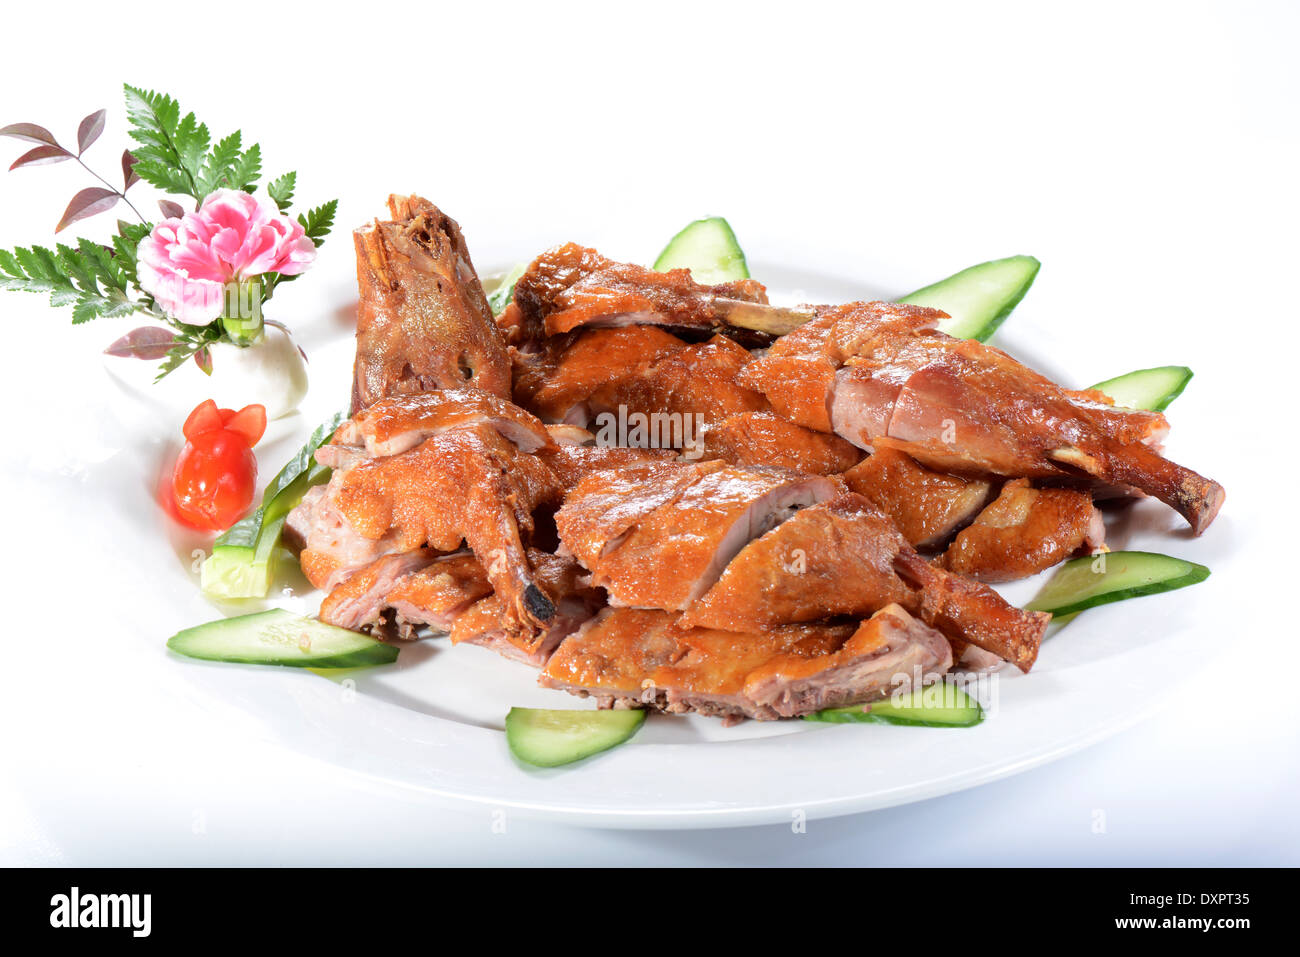 Chinesisches Essen: Fried Chicken auf einem weißen Teller Stockfoto